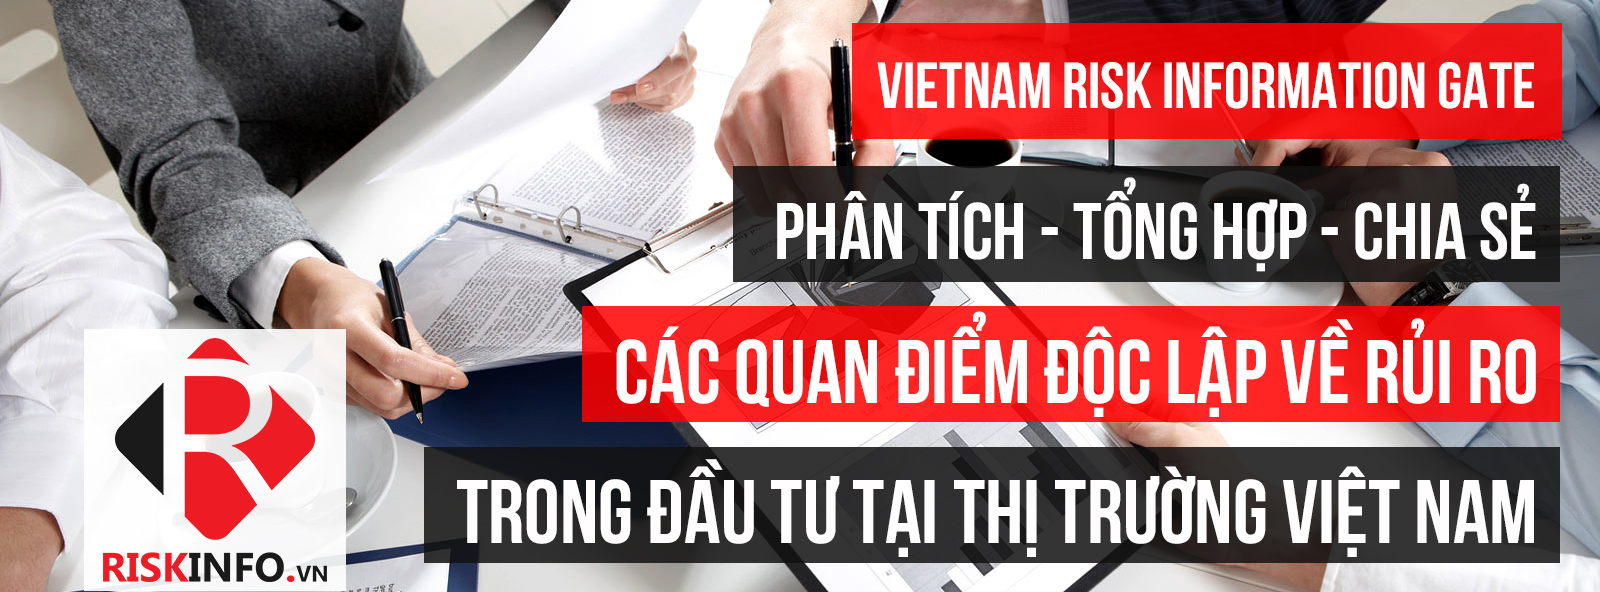 Kênh thông tin phân tích rủi ro trong đầu tư tại thị trường Việt Nam